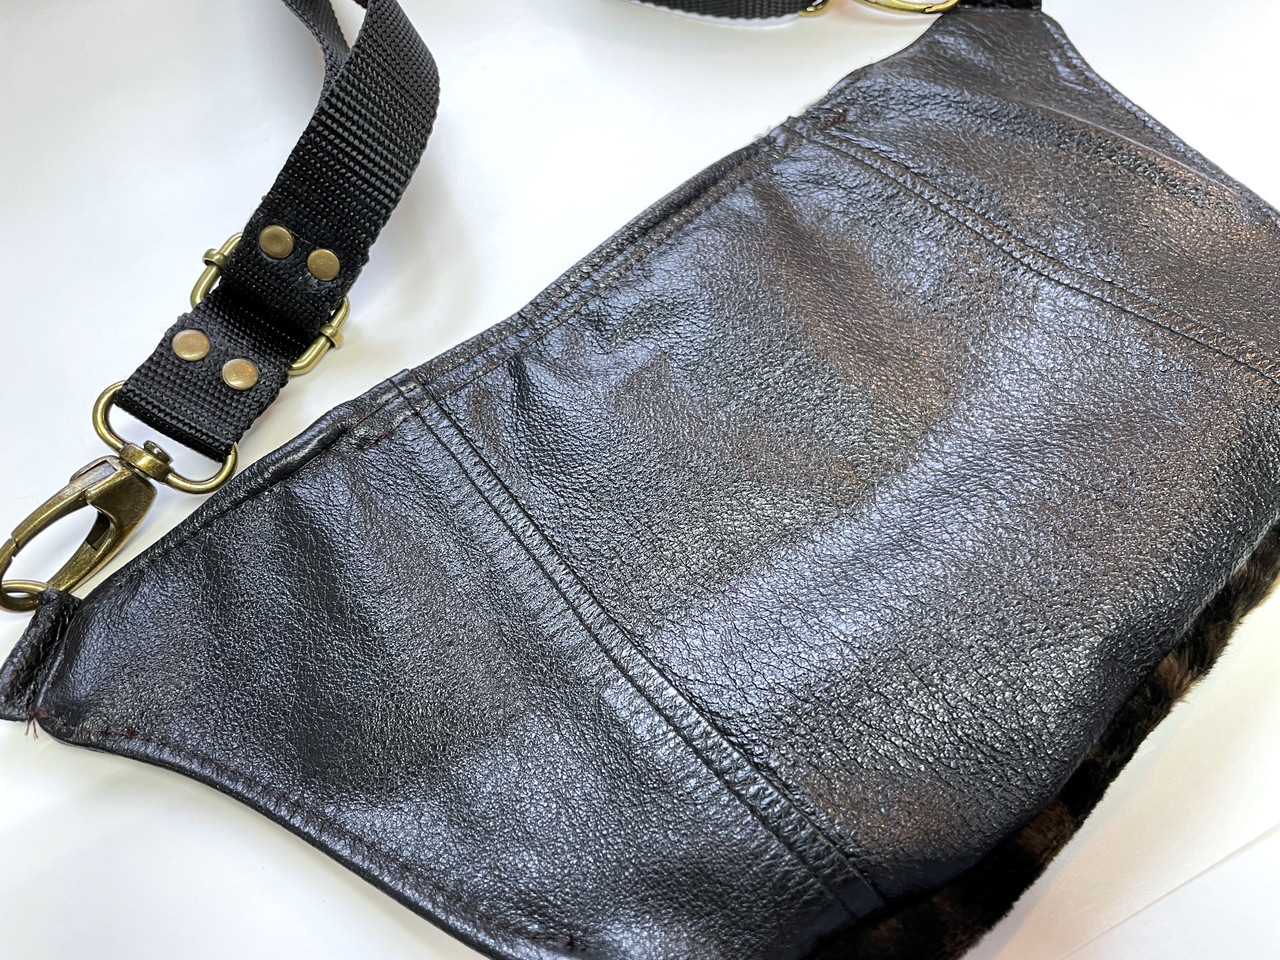 Patterned Faux Fur Sling Bag / Fanny Pack / Belt Bag